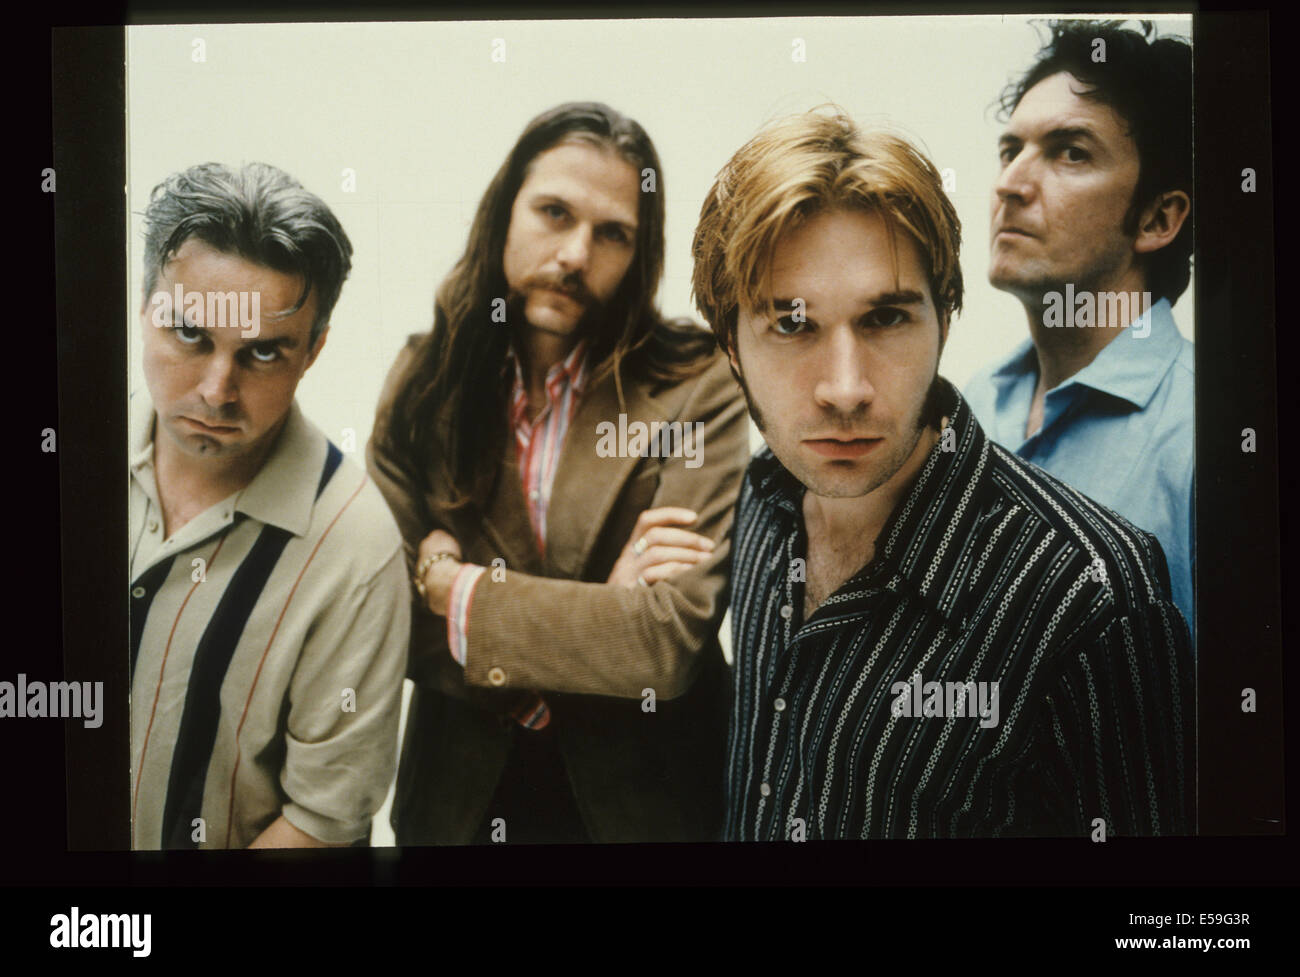 Promotion Del Amitri photo de groupe rock britannique environ 1990 Banque D'Images